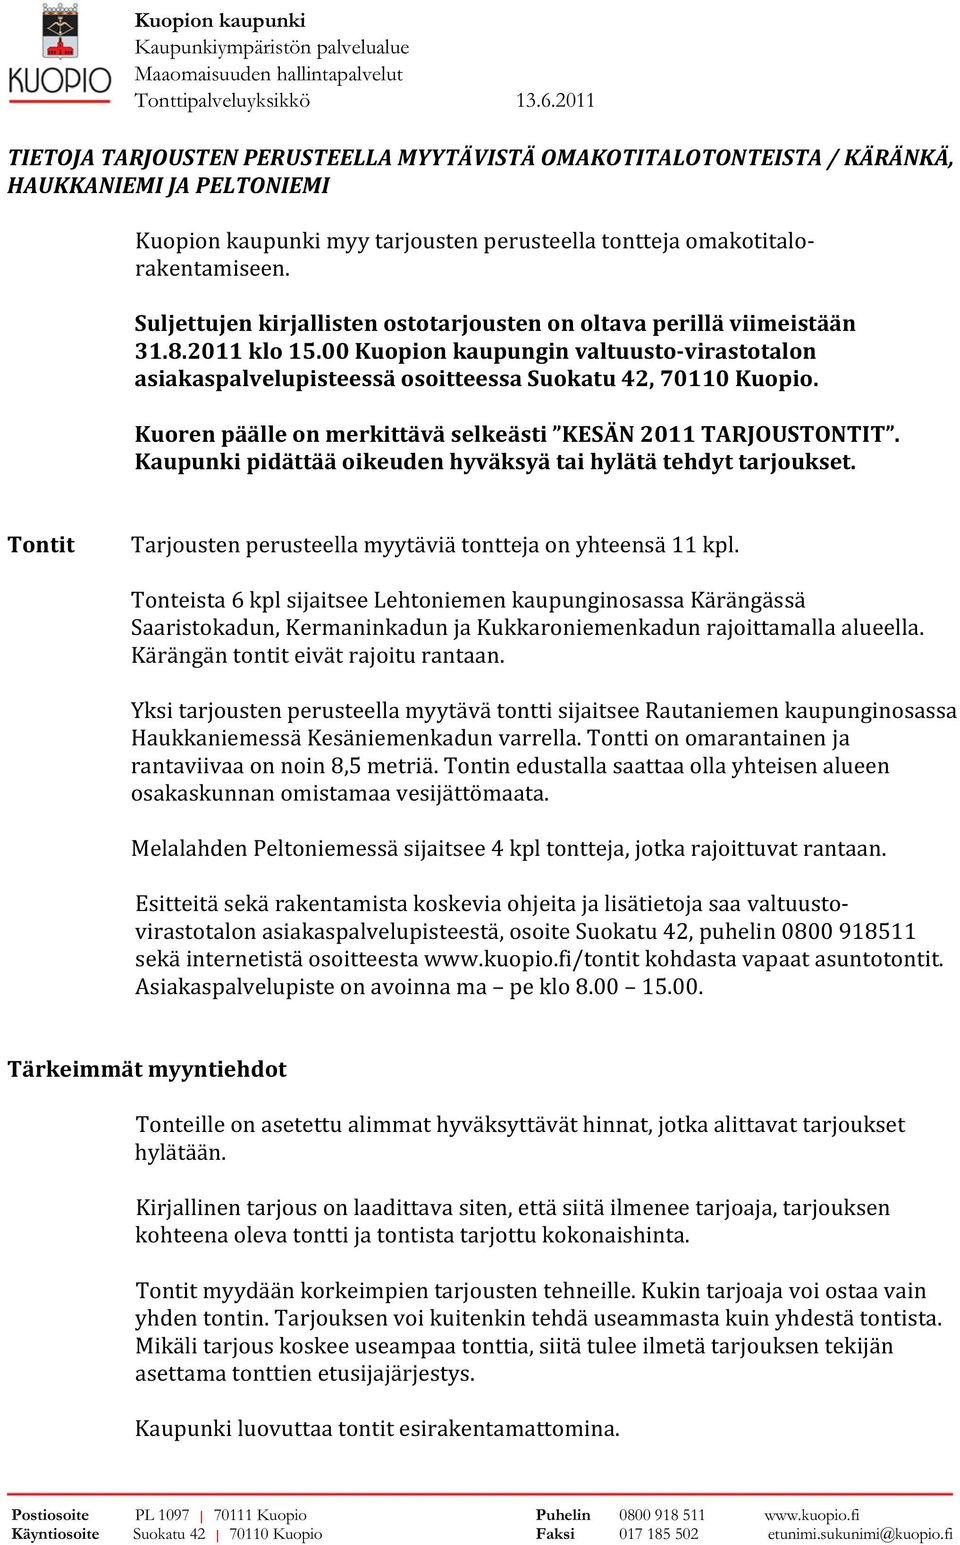 viimeistään.. klo. valtuusto-virastotalon asiakaspalvelupisteessä osoitteessa Suokatu, Kuopio.